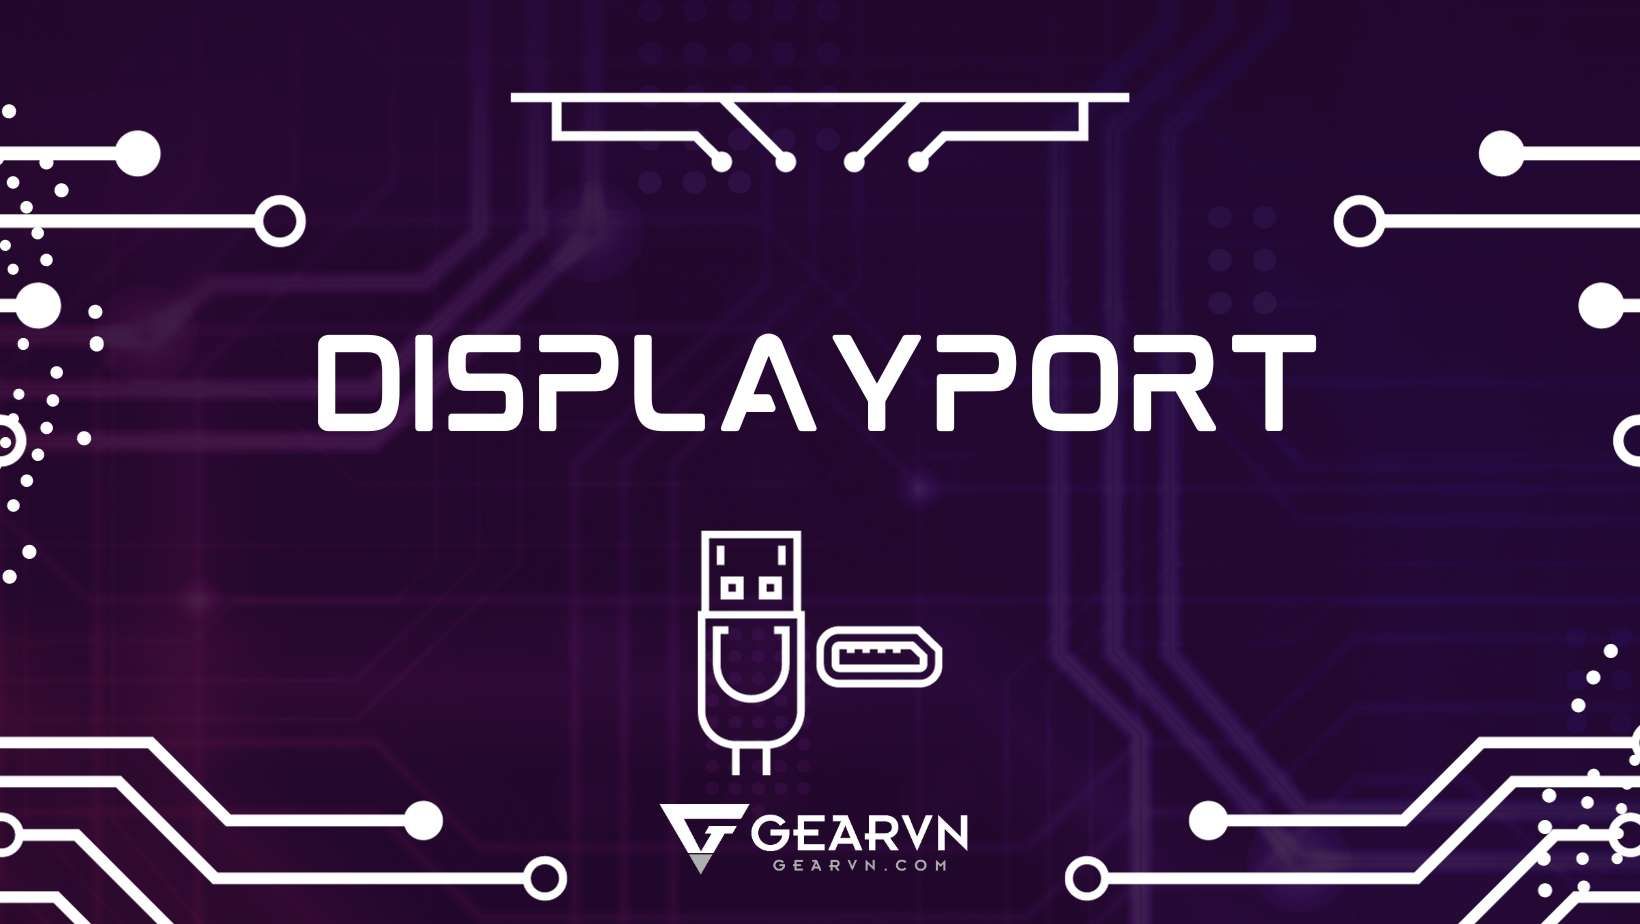 Cổng DisplayPort là gì? Có bao nhiêu loại cổng DisplayPort?